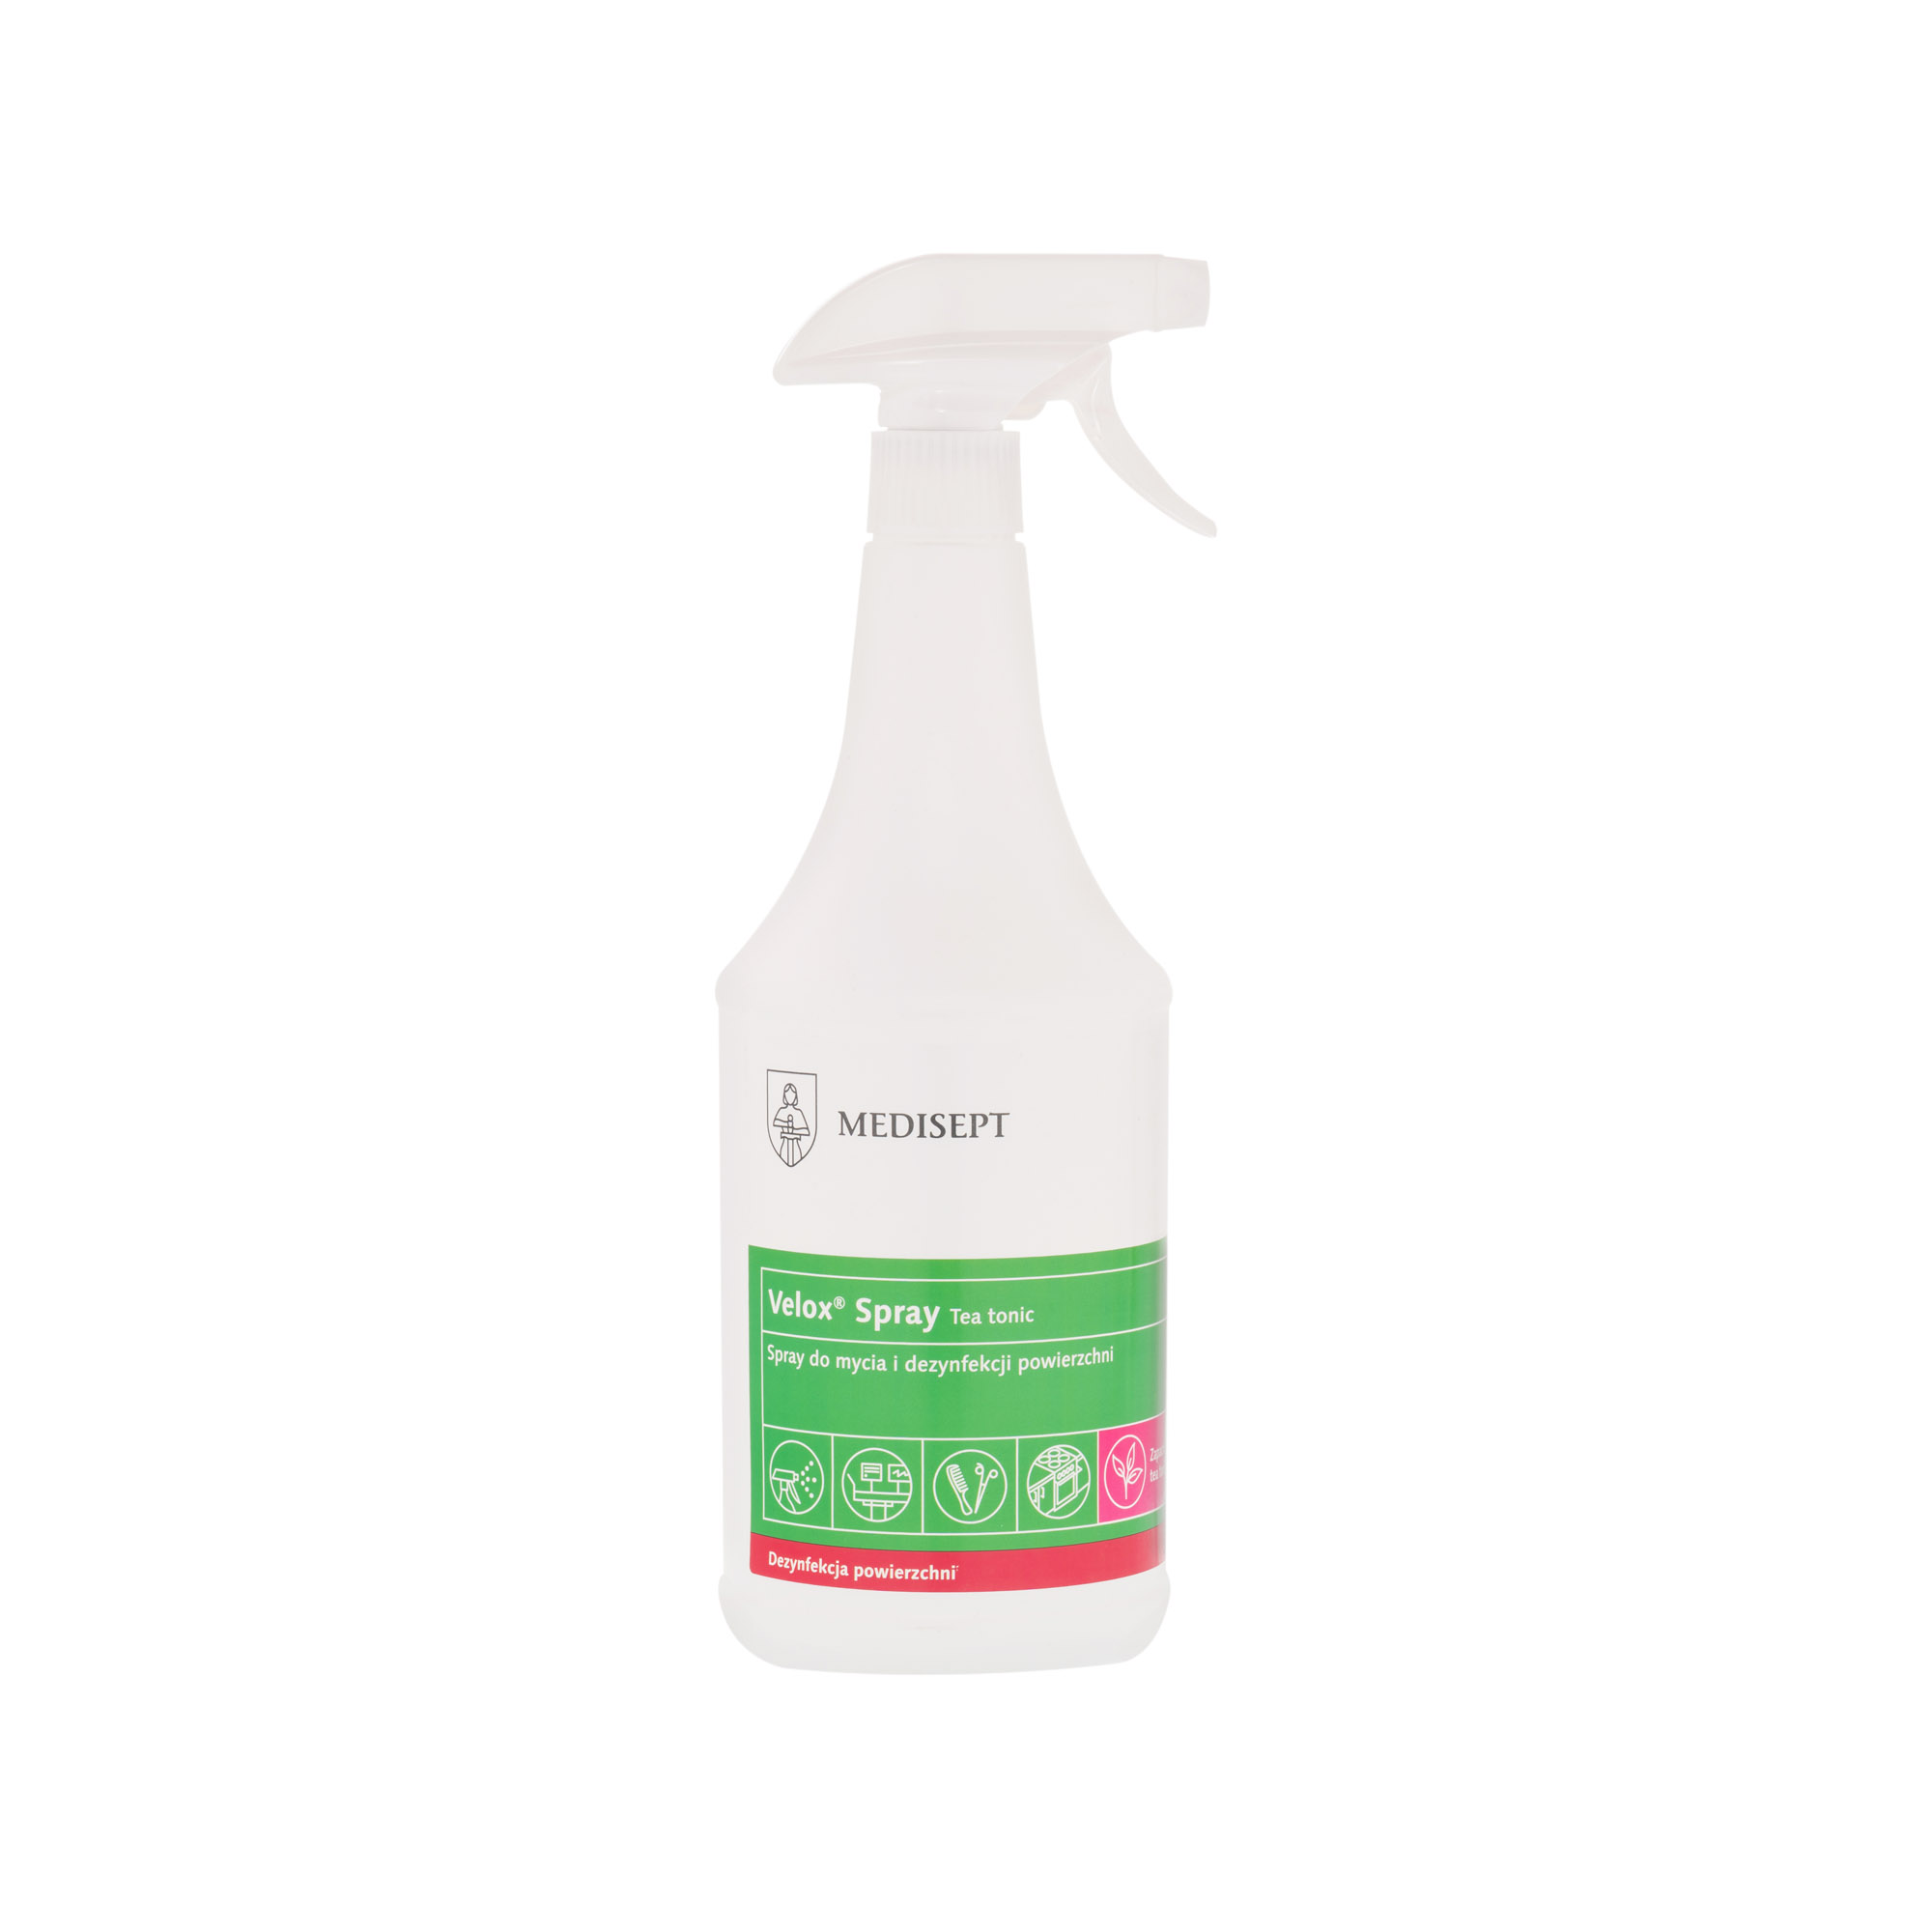 MEDISEPT Velox Spray Tea Tonic Spray do dezynfekcji powerzchni 1L